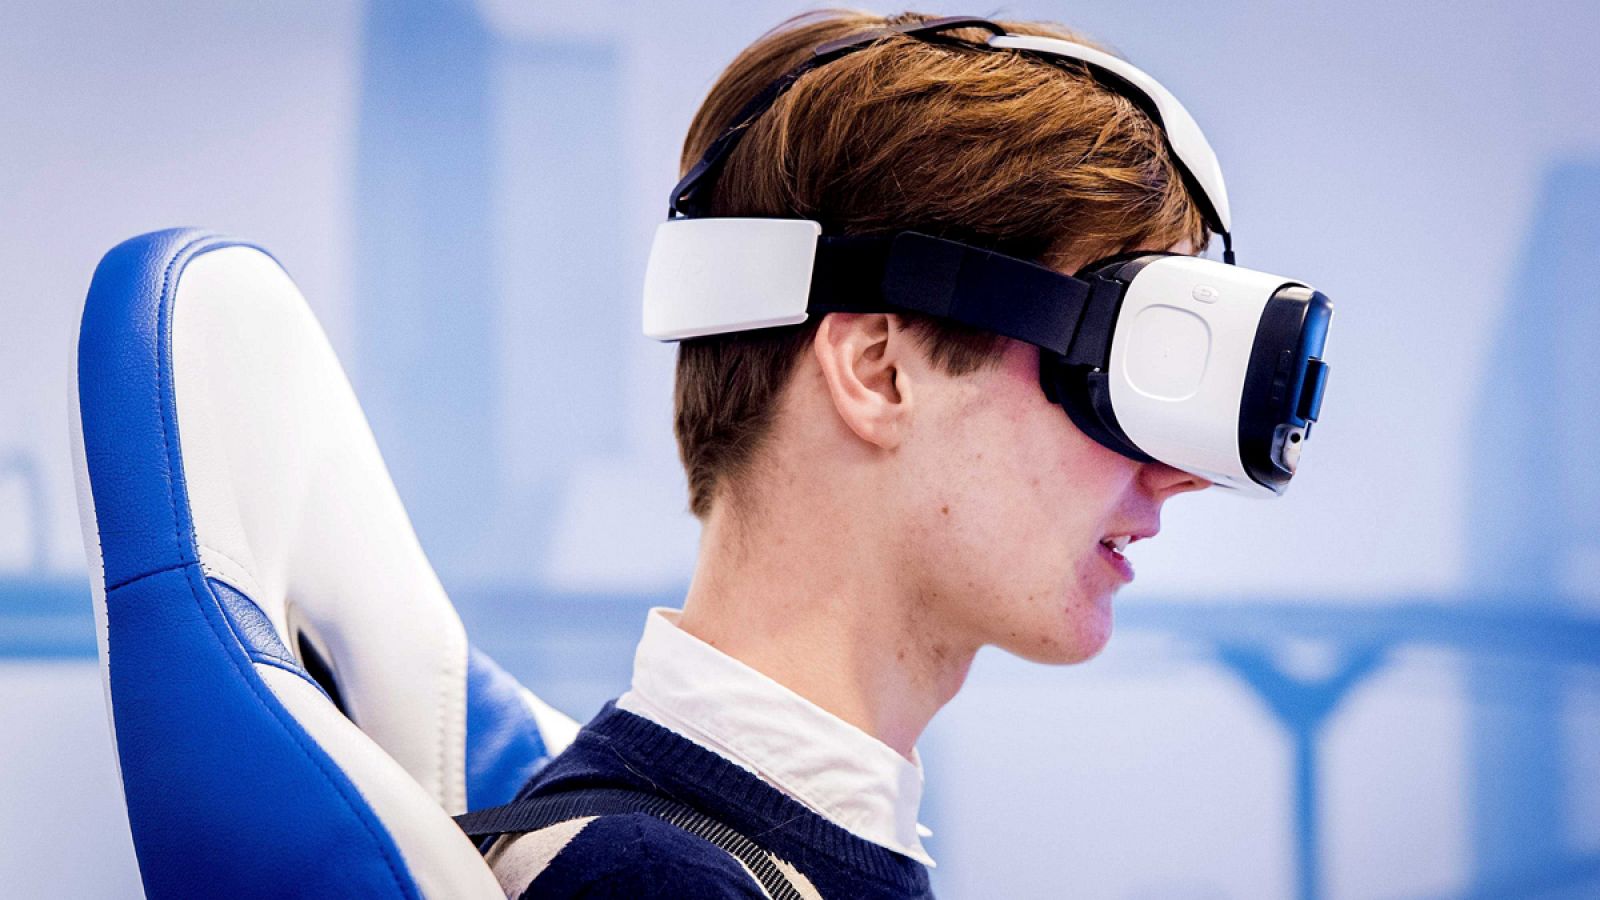 El mercado de la realidad virtual se ha convertido en una de las grandes apuestas de las compañías tecnológicas.